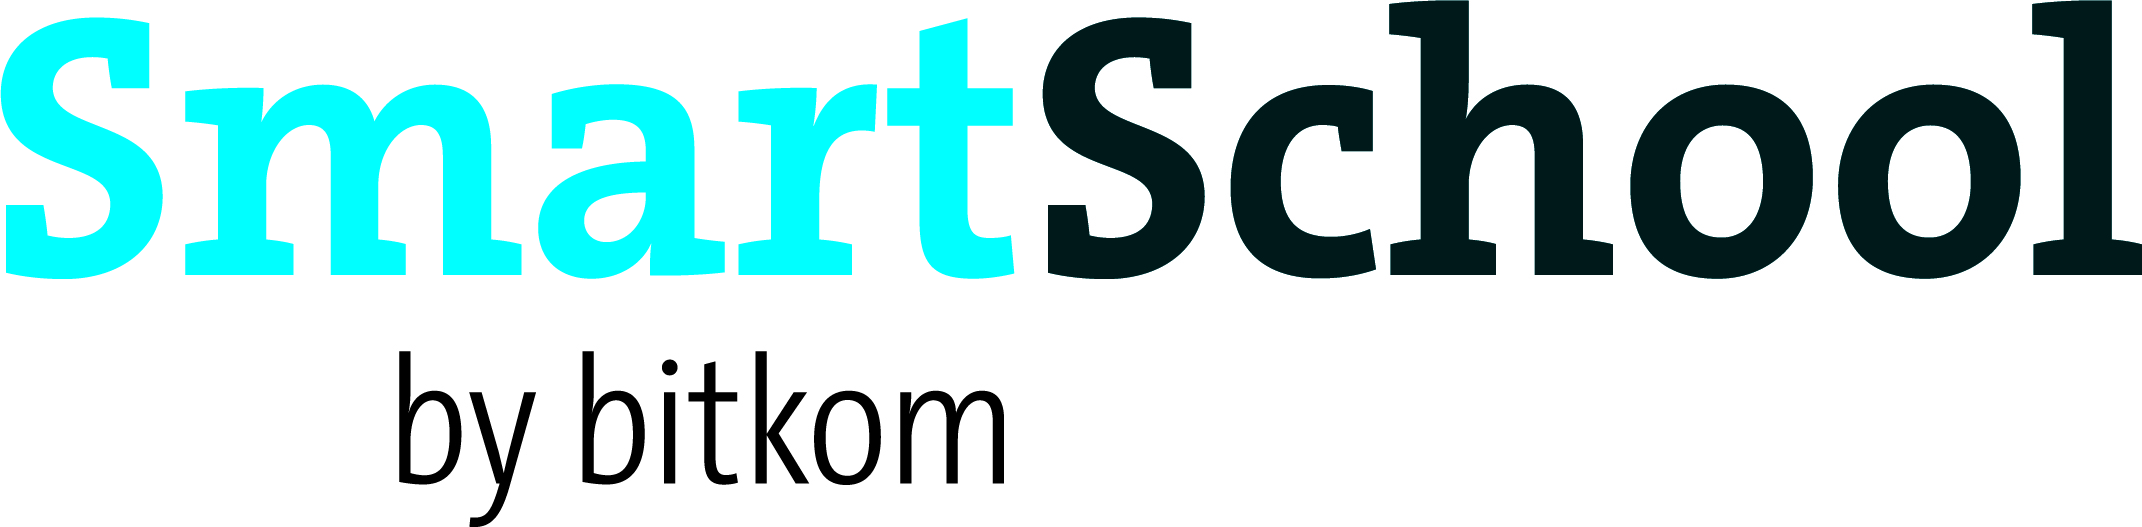 Logo Smart School 4C